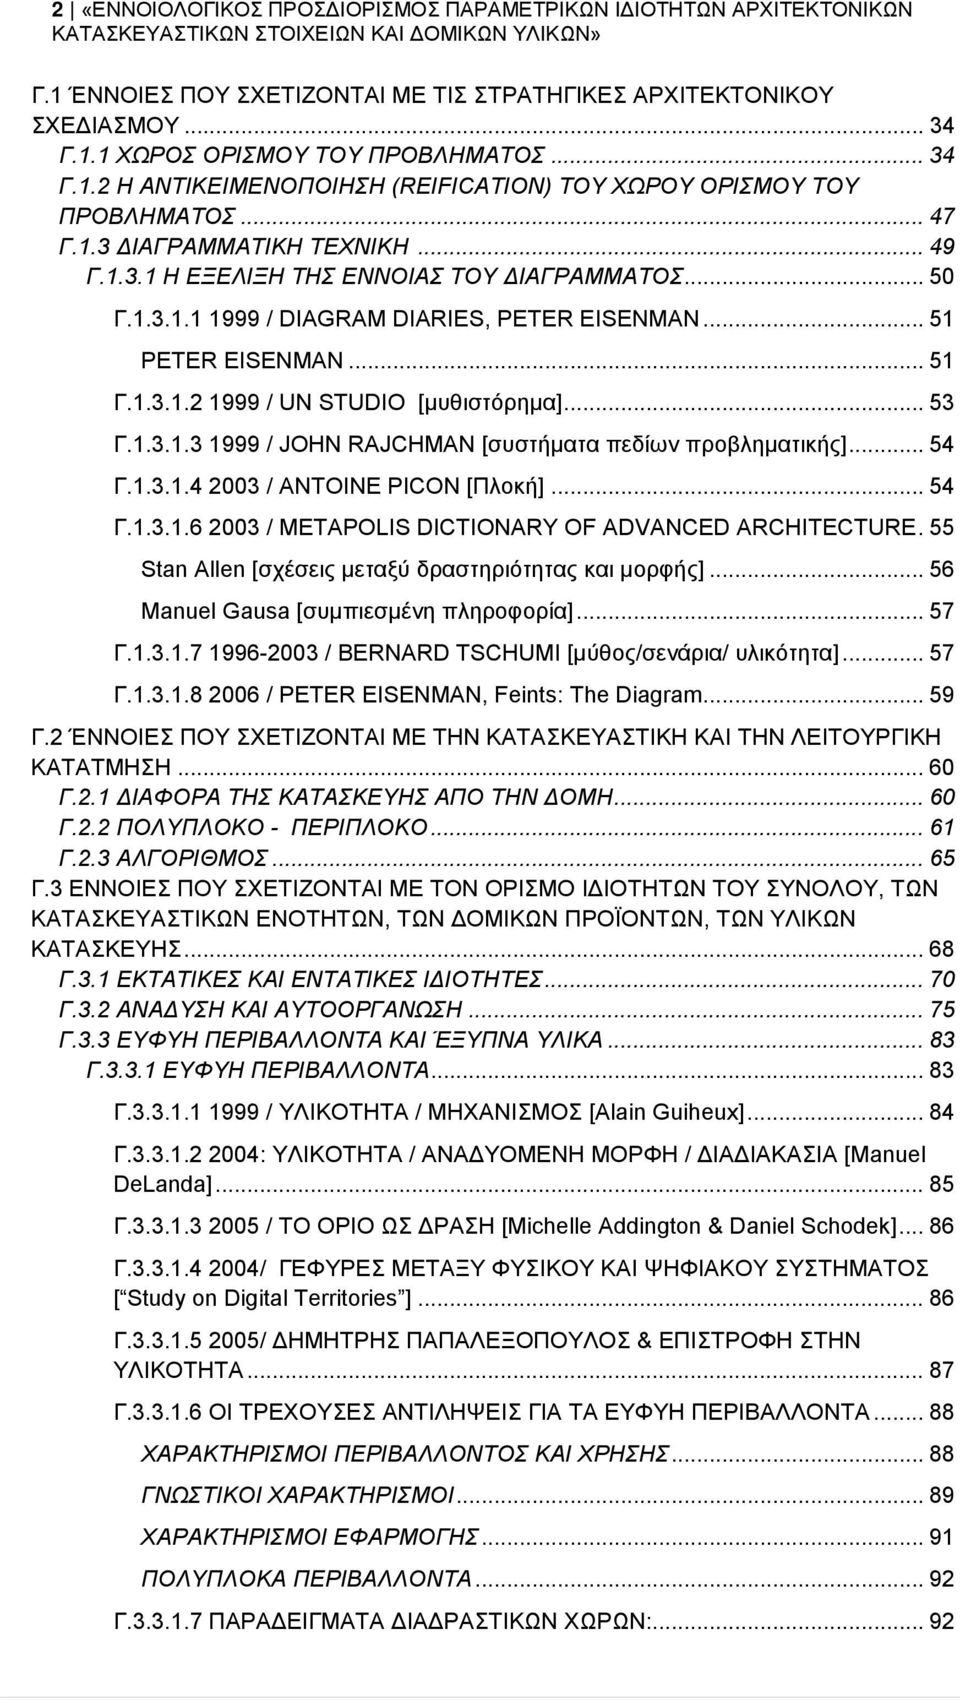 .. 53 Γ.1.3.1.3 1999 / JOHN RAJCHMAN [συστήματα πεδίων προβληματικής]... 54 Γ.1.3.1.4 2003 / ANTOINE PICON [Πλοκή]... 54 Γ.1.3.1.6 2003 / METAPOLIS DICTIONARY OF ADVANCED ARCHITECTURE.